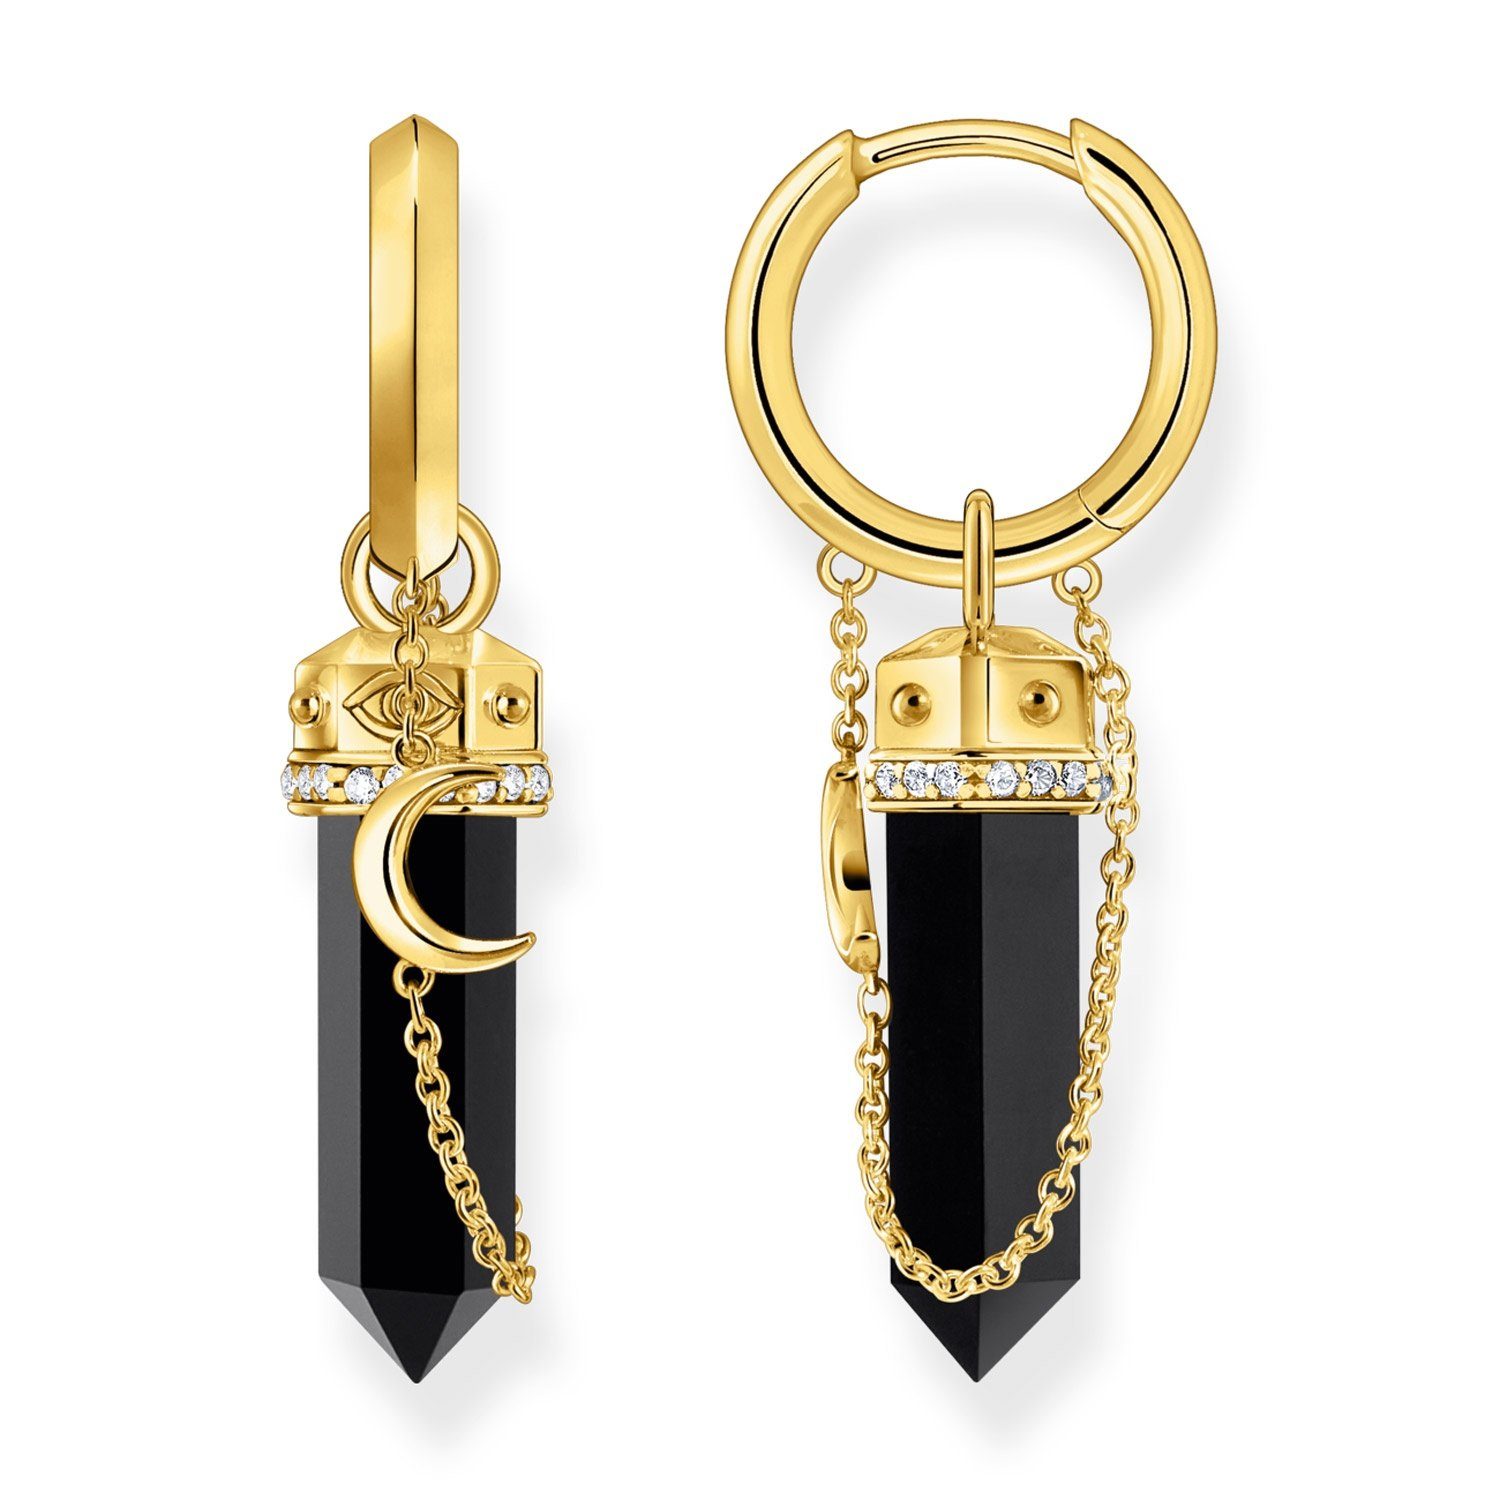 Goldene Thomas Sabo Ohrringe für Damen online kaufen | OTTO